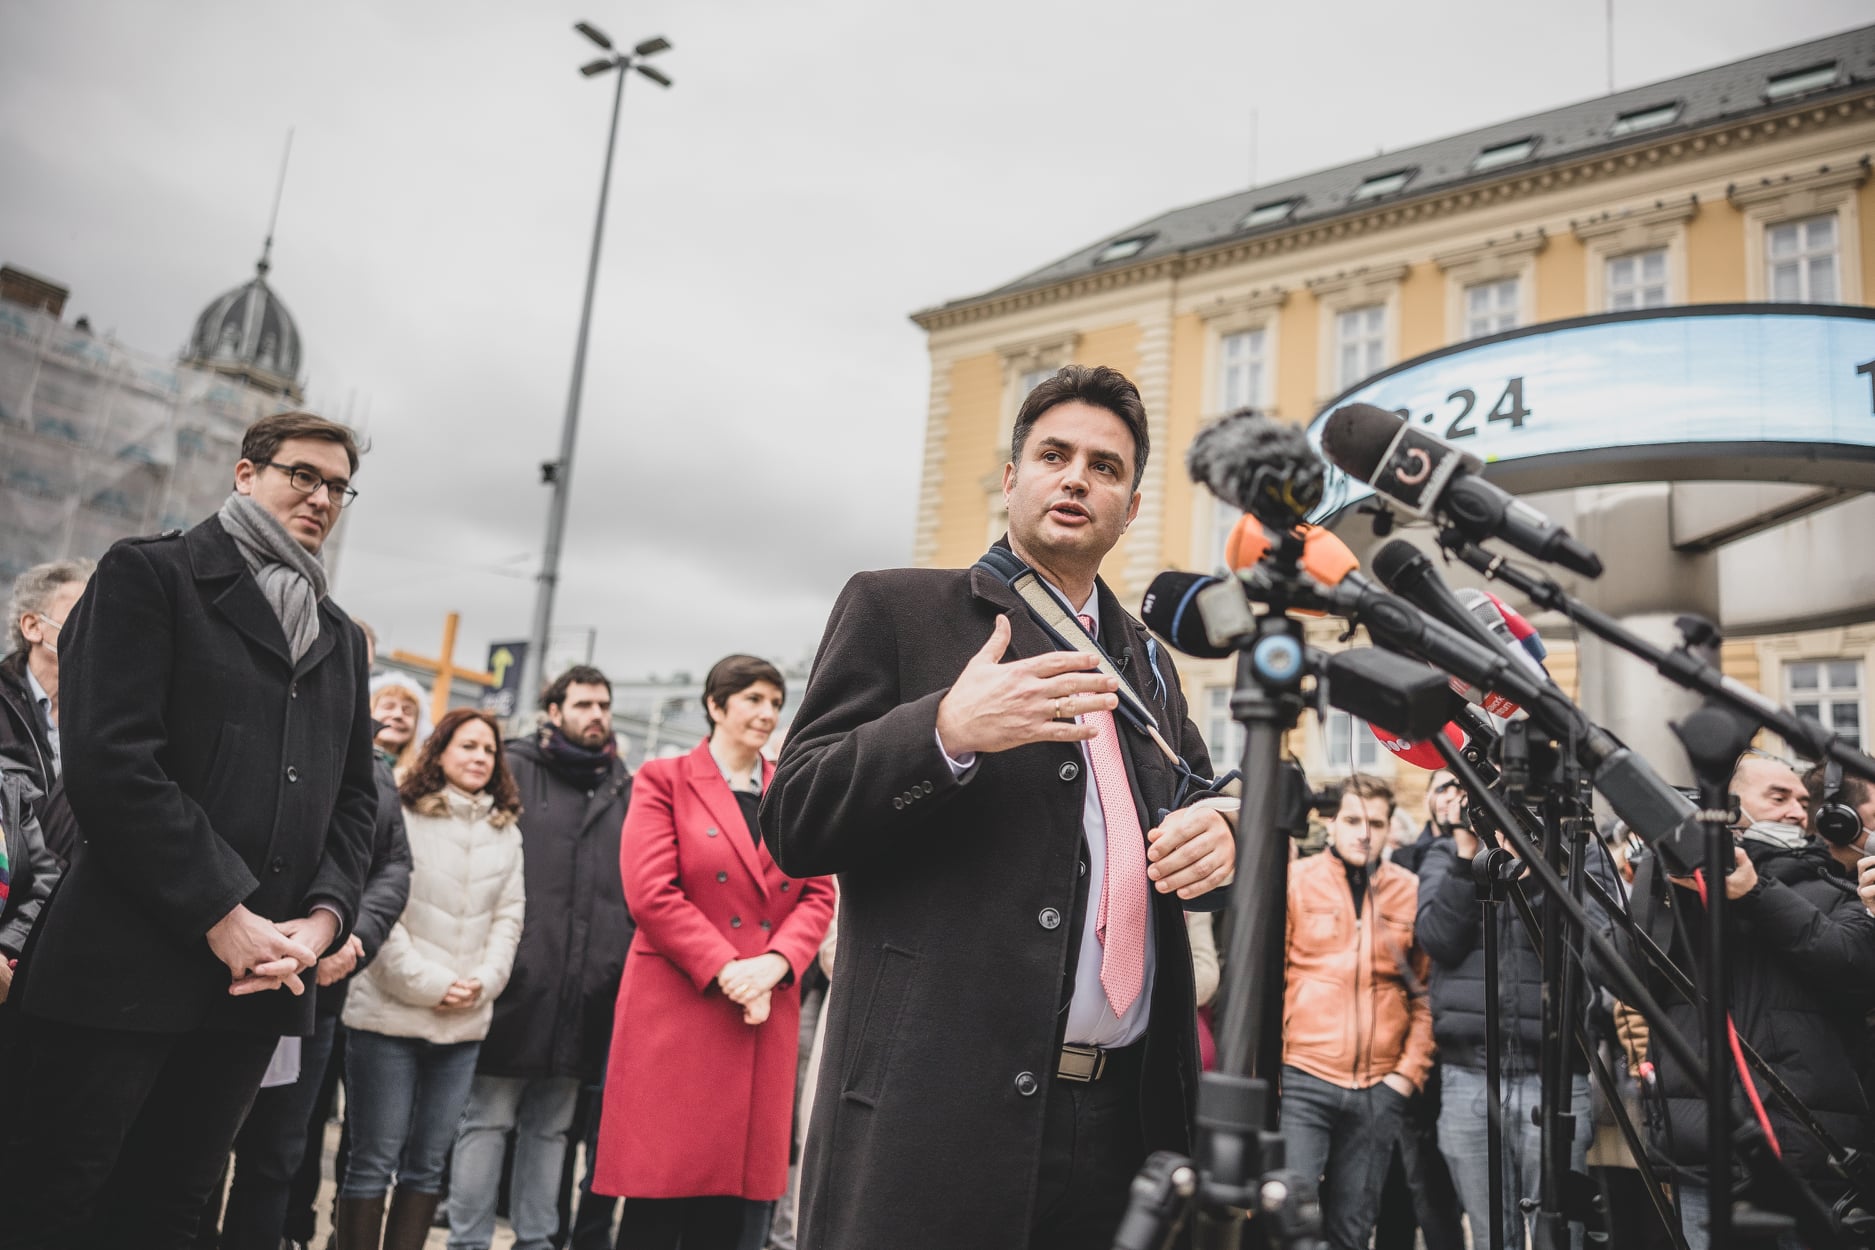 Ellenzék: Április 3-án nemet kell mondani a Fidesz cinikus politikájára